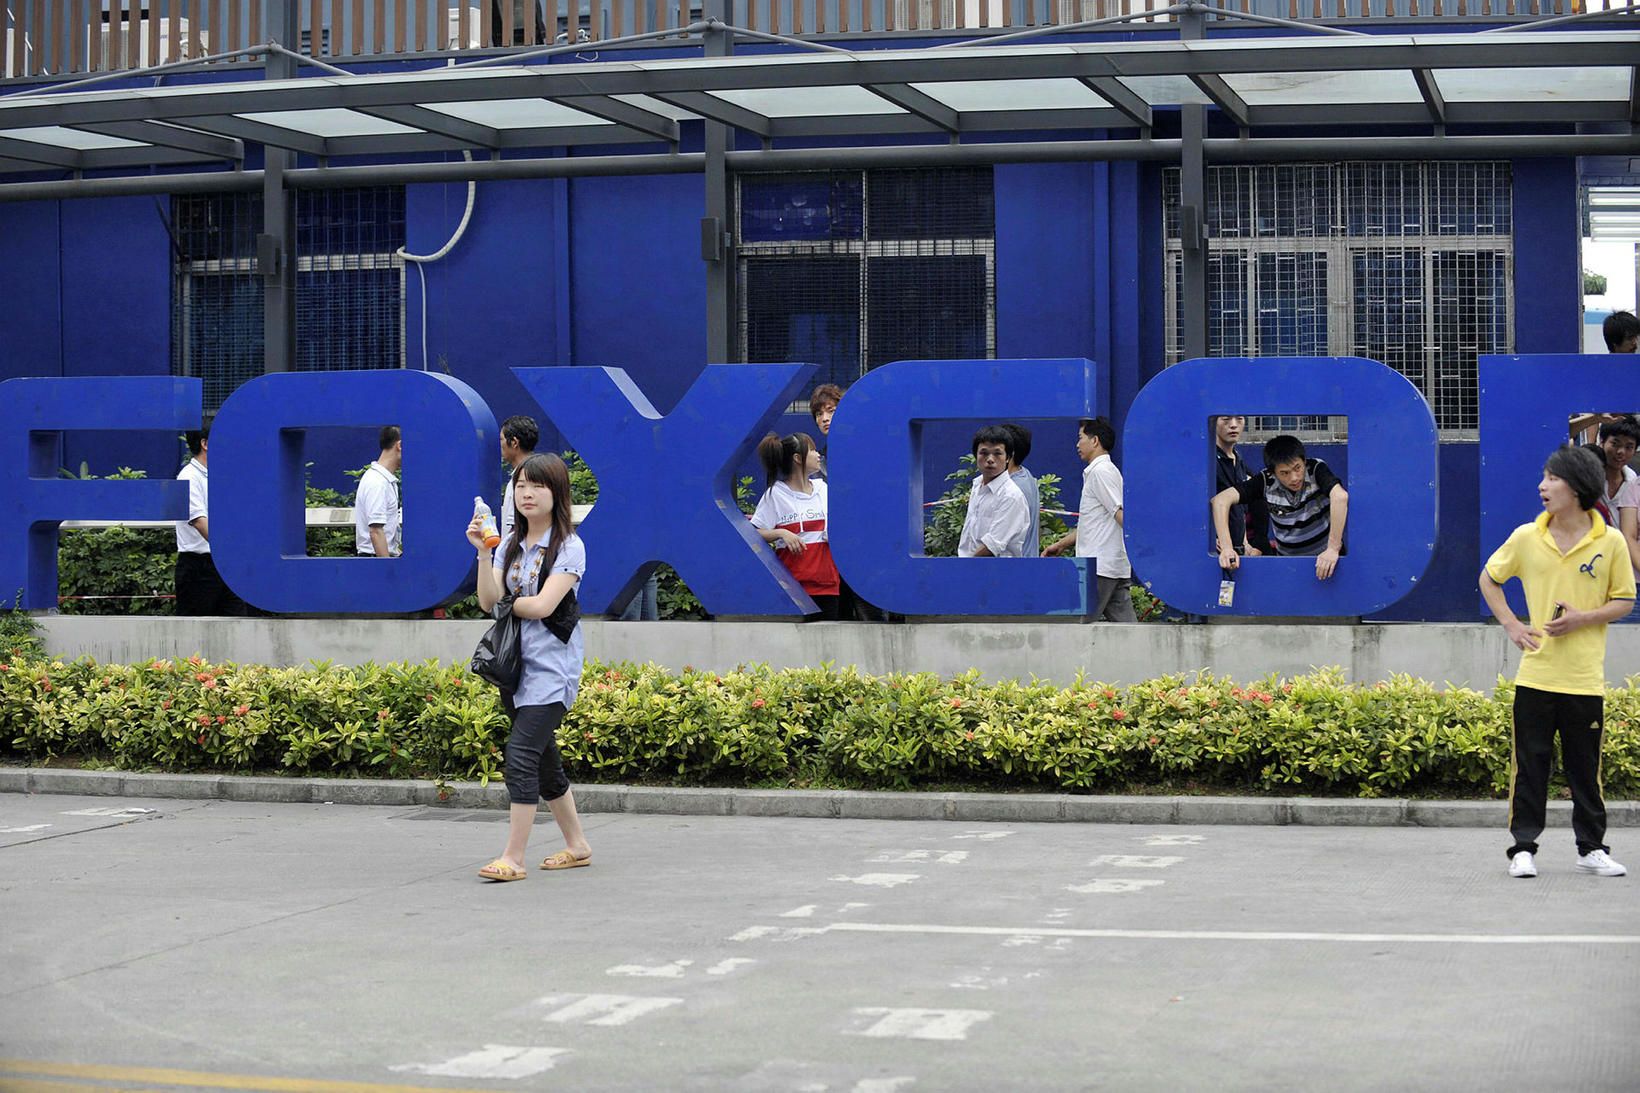 Starfsmenn fyrir utan verksmiðju Foxconn í borginni Shenzhen í héraðinu …